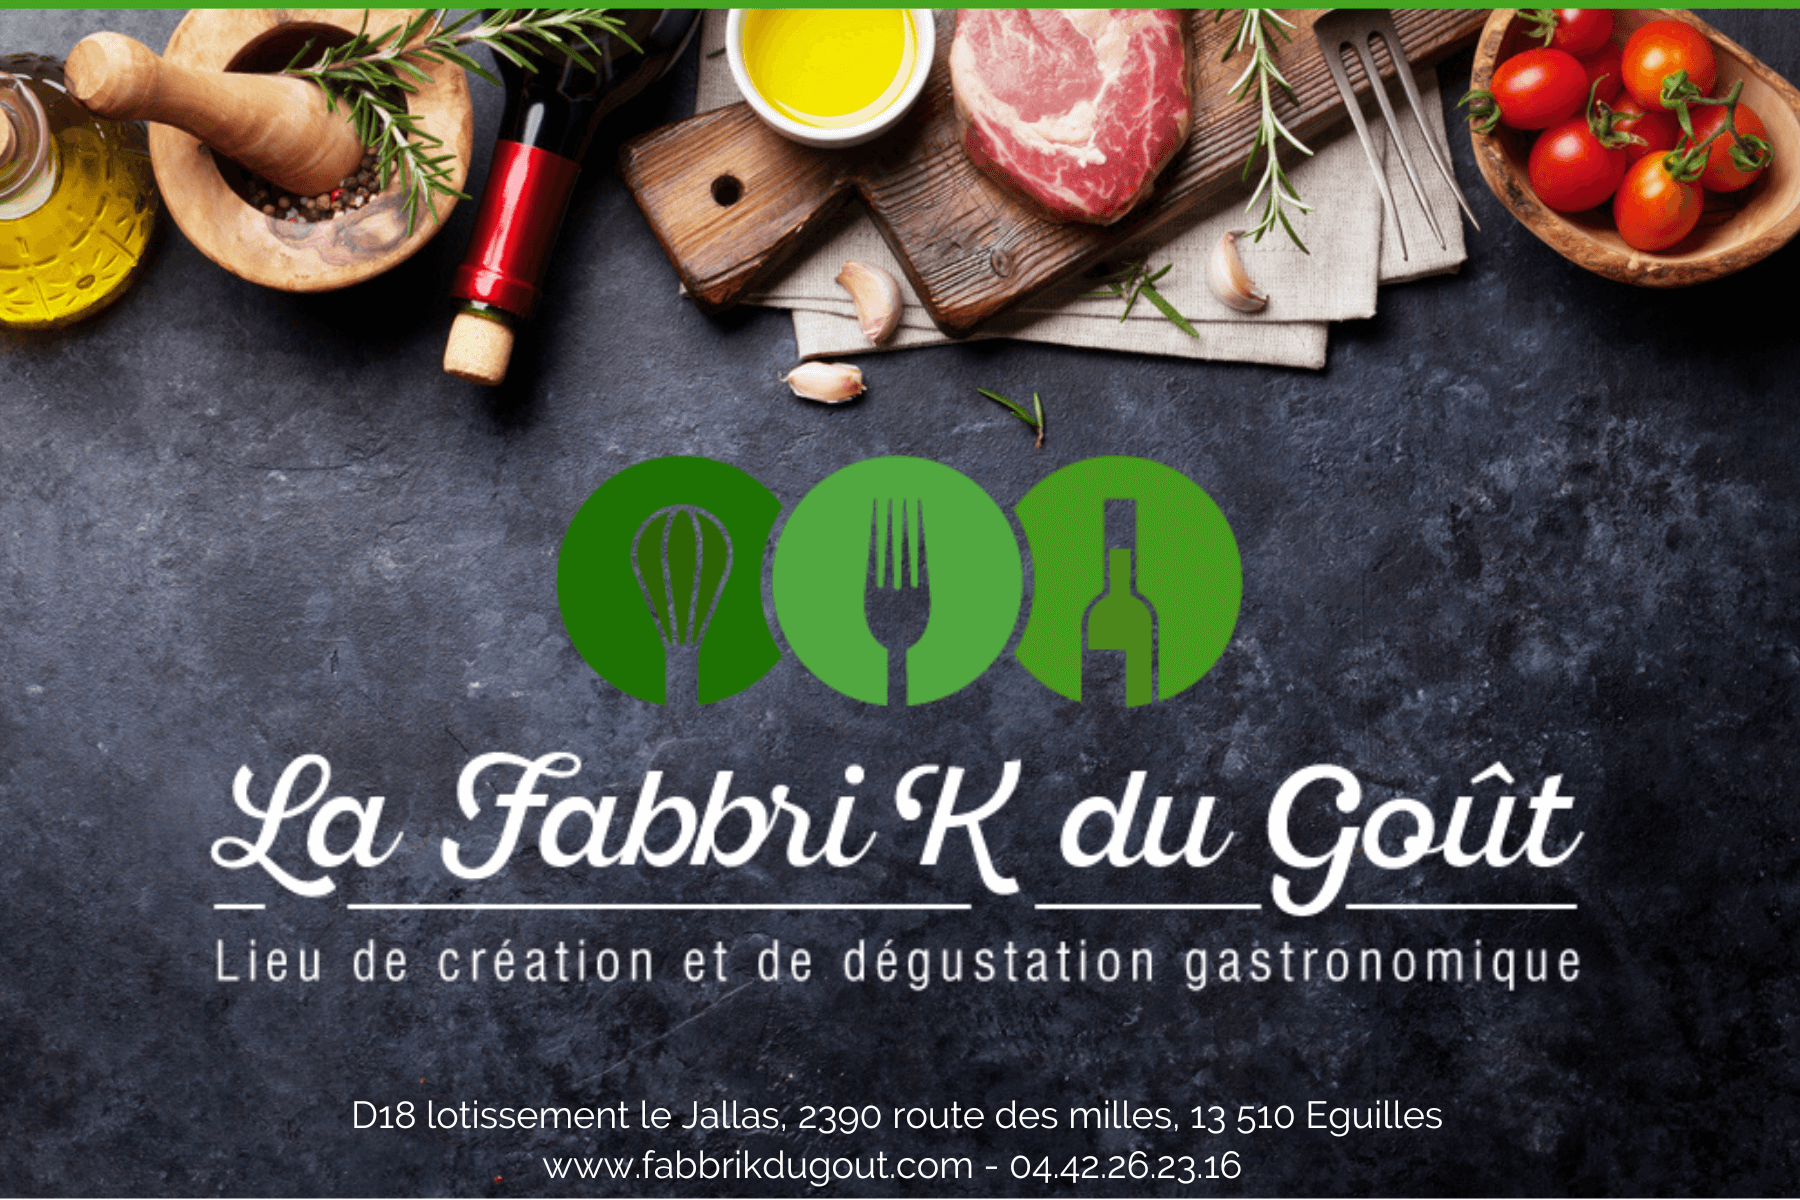 https://www.fabbrikdugout.com/wp-content/uploads/2022/04/Bon-cadeau-Atelier-cuisine-Formule-classique-1.png